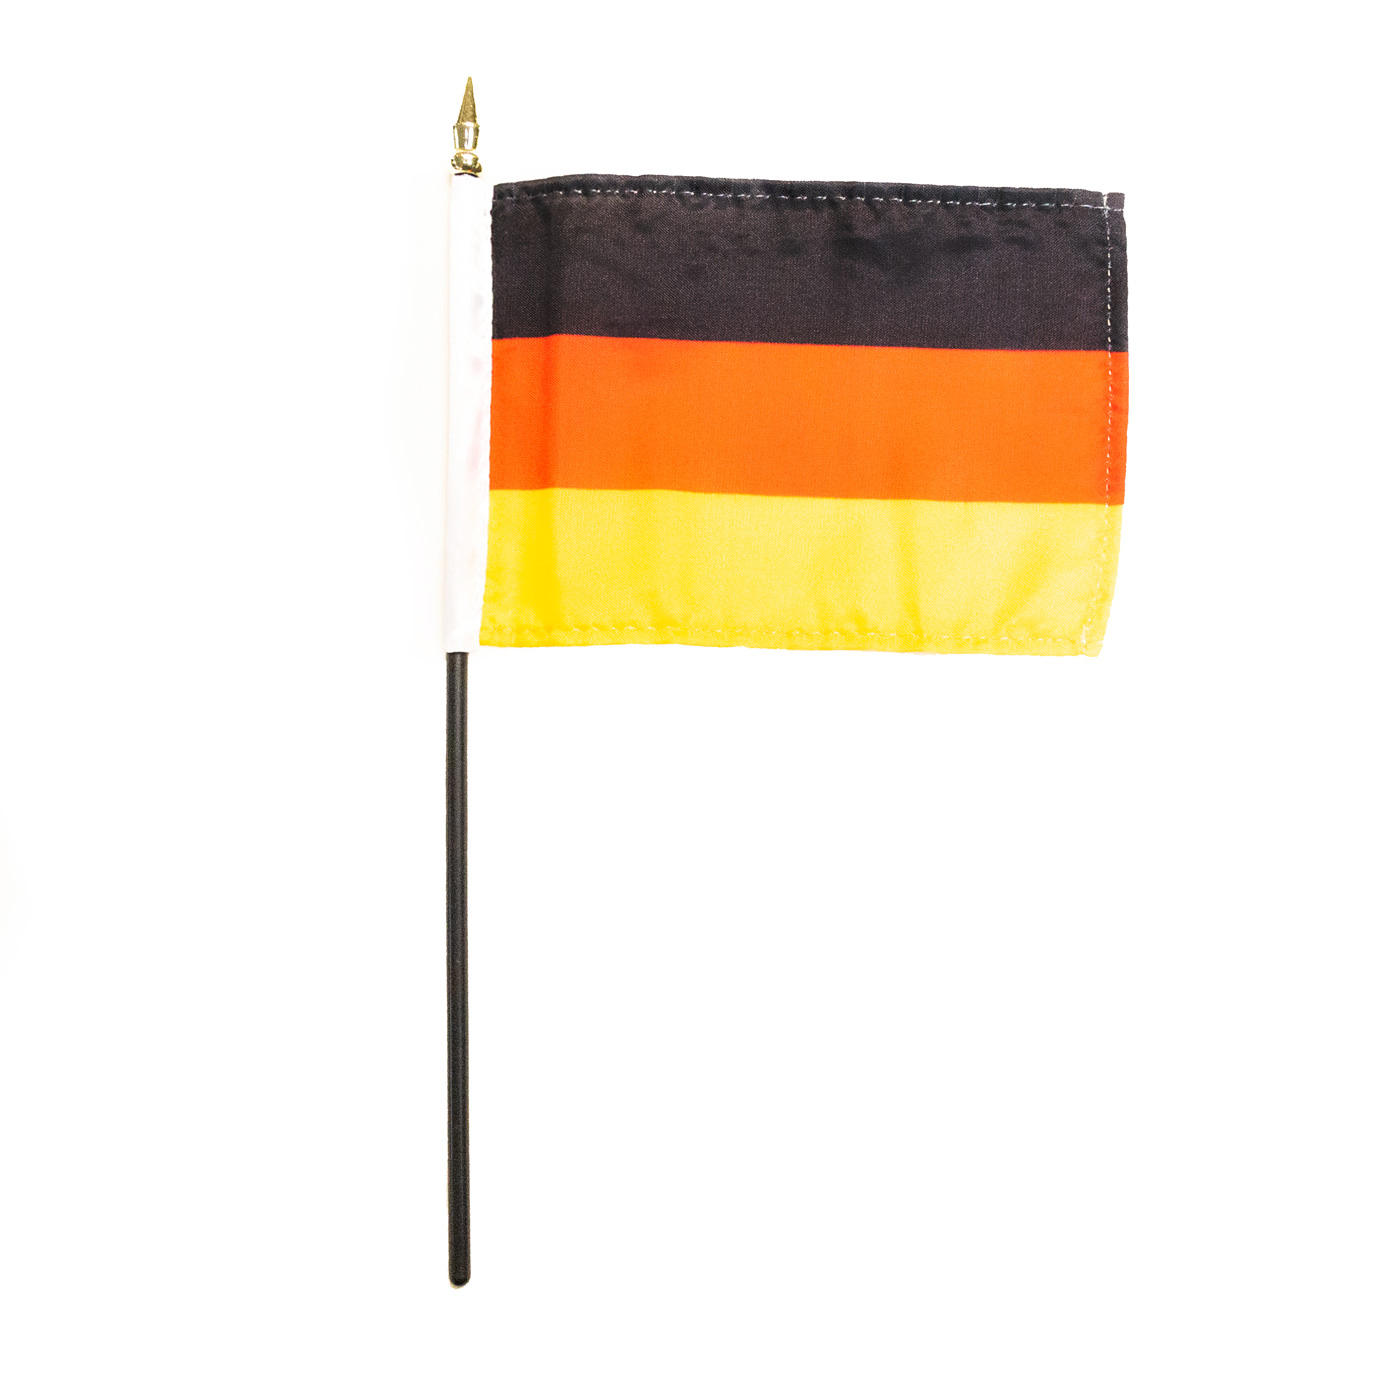 4 X 6 inch German flag - Ernst Licht